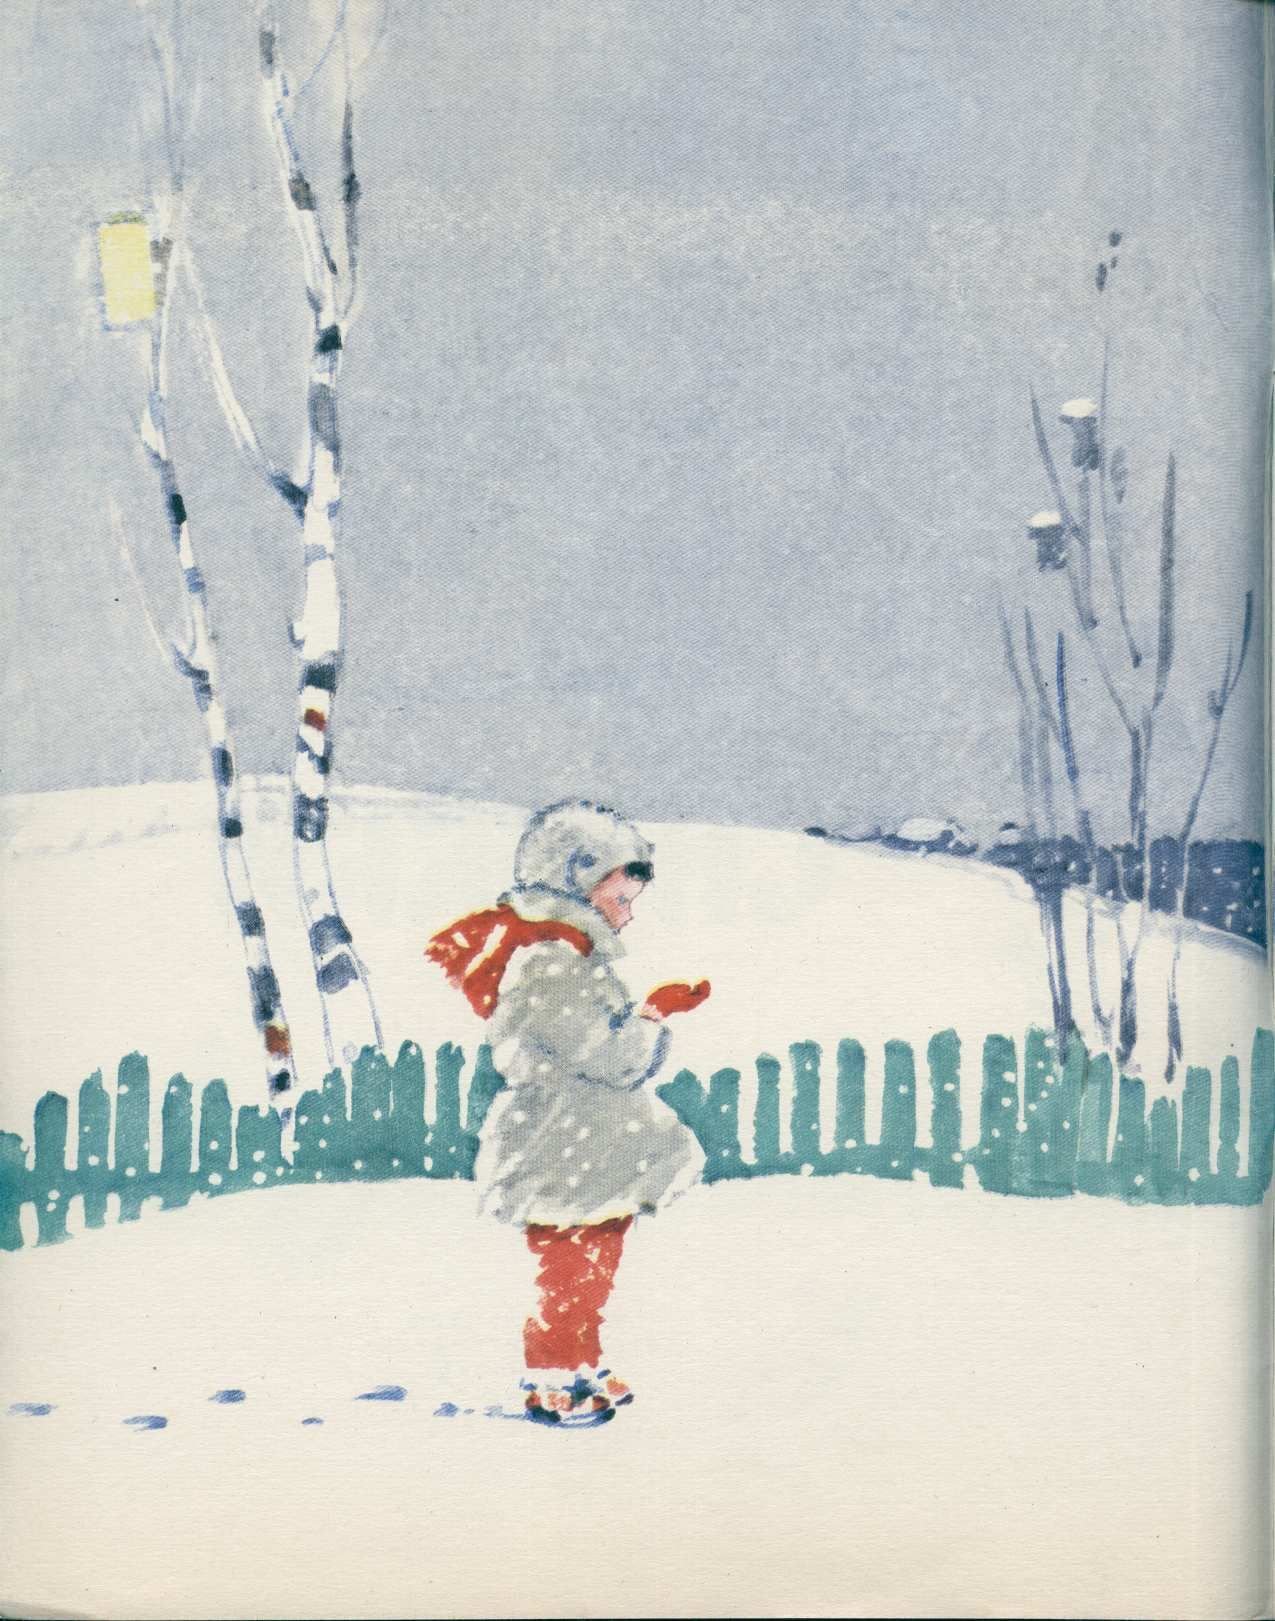 Н н снежок. Бунин первый снег иллюстрации. Иллюстрация к стихотворению первый снег.